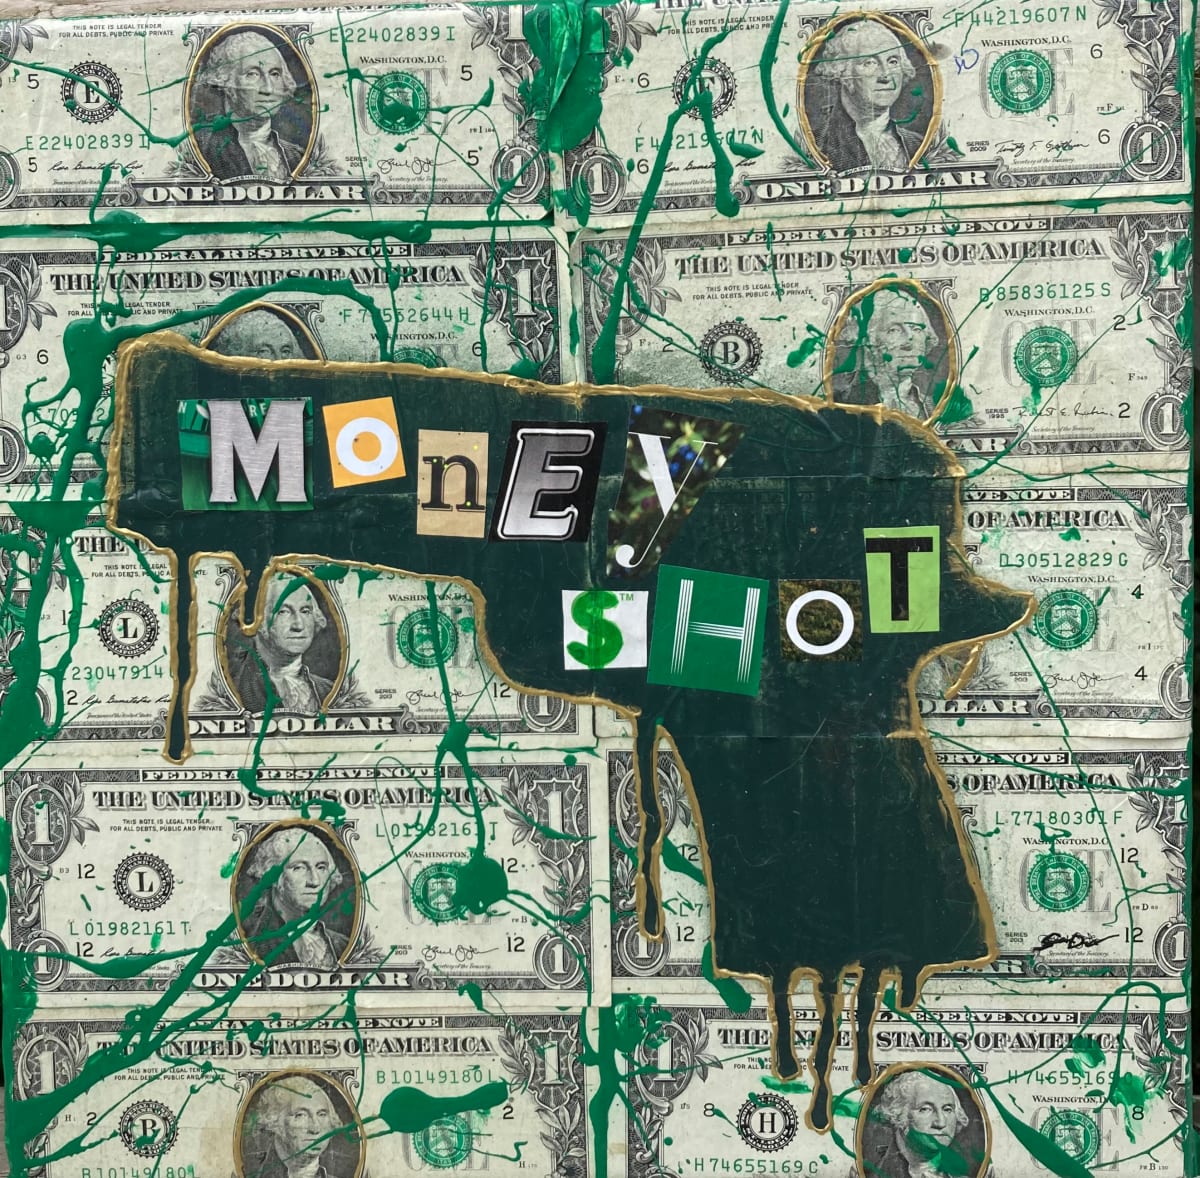 Moneyshot 